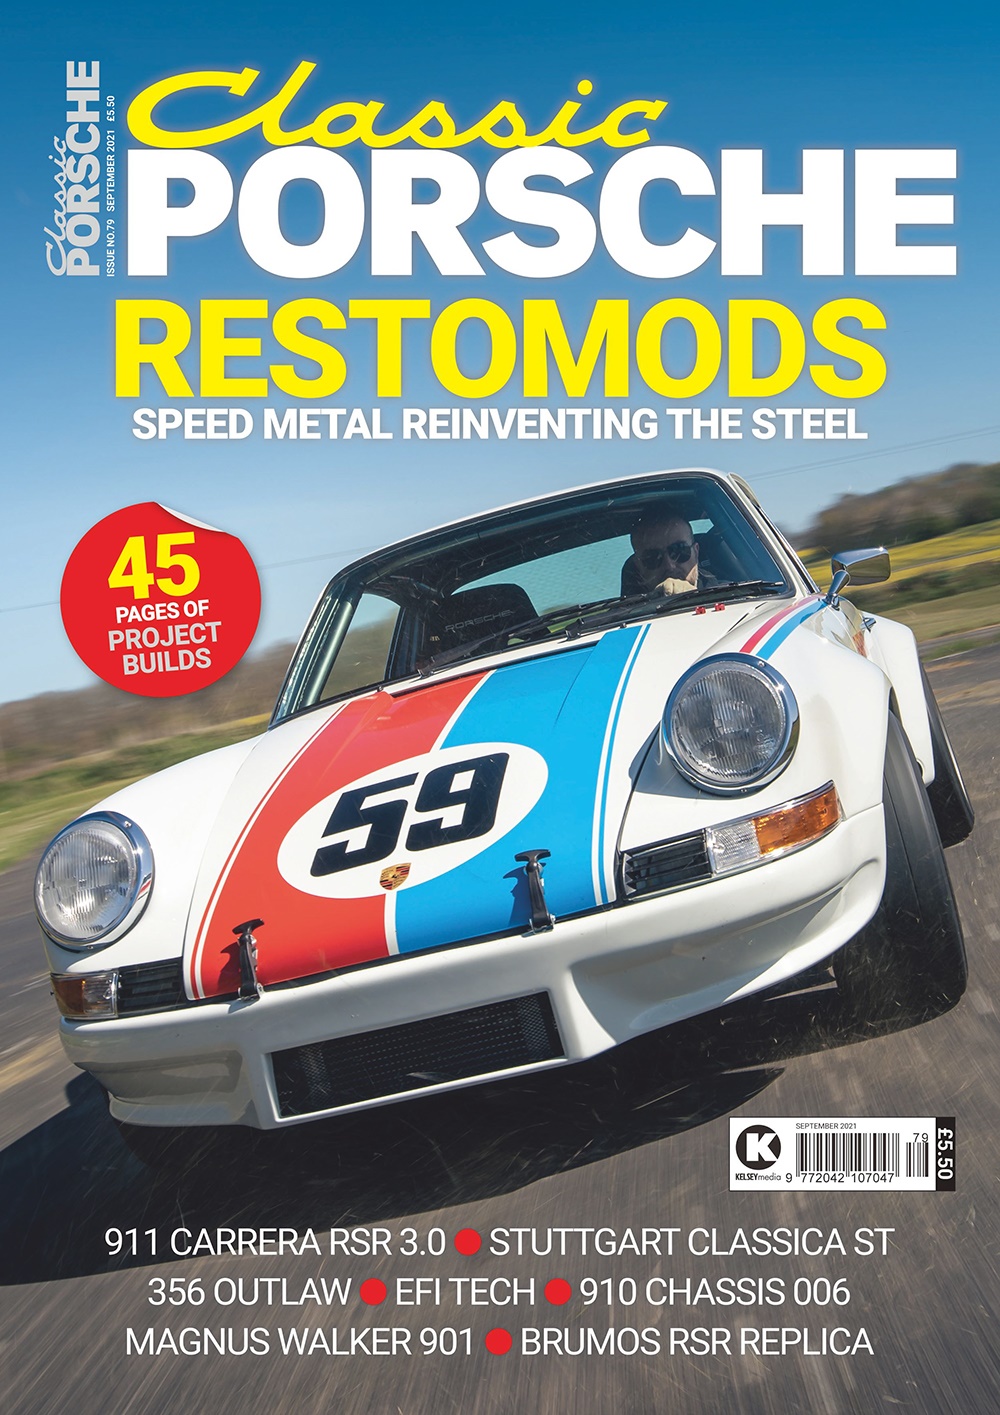 Classic Porsche Issue 79 - September 2021